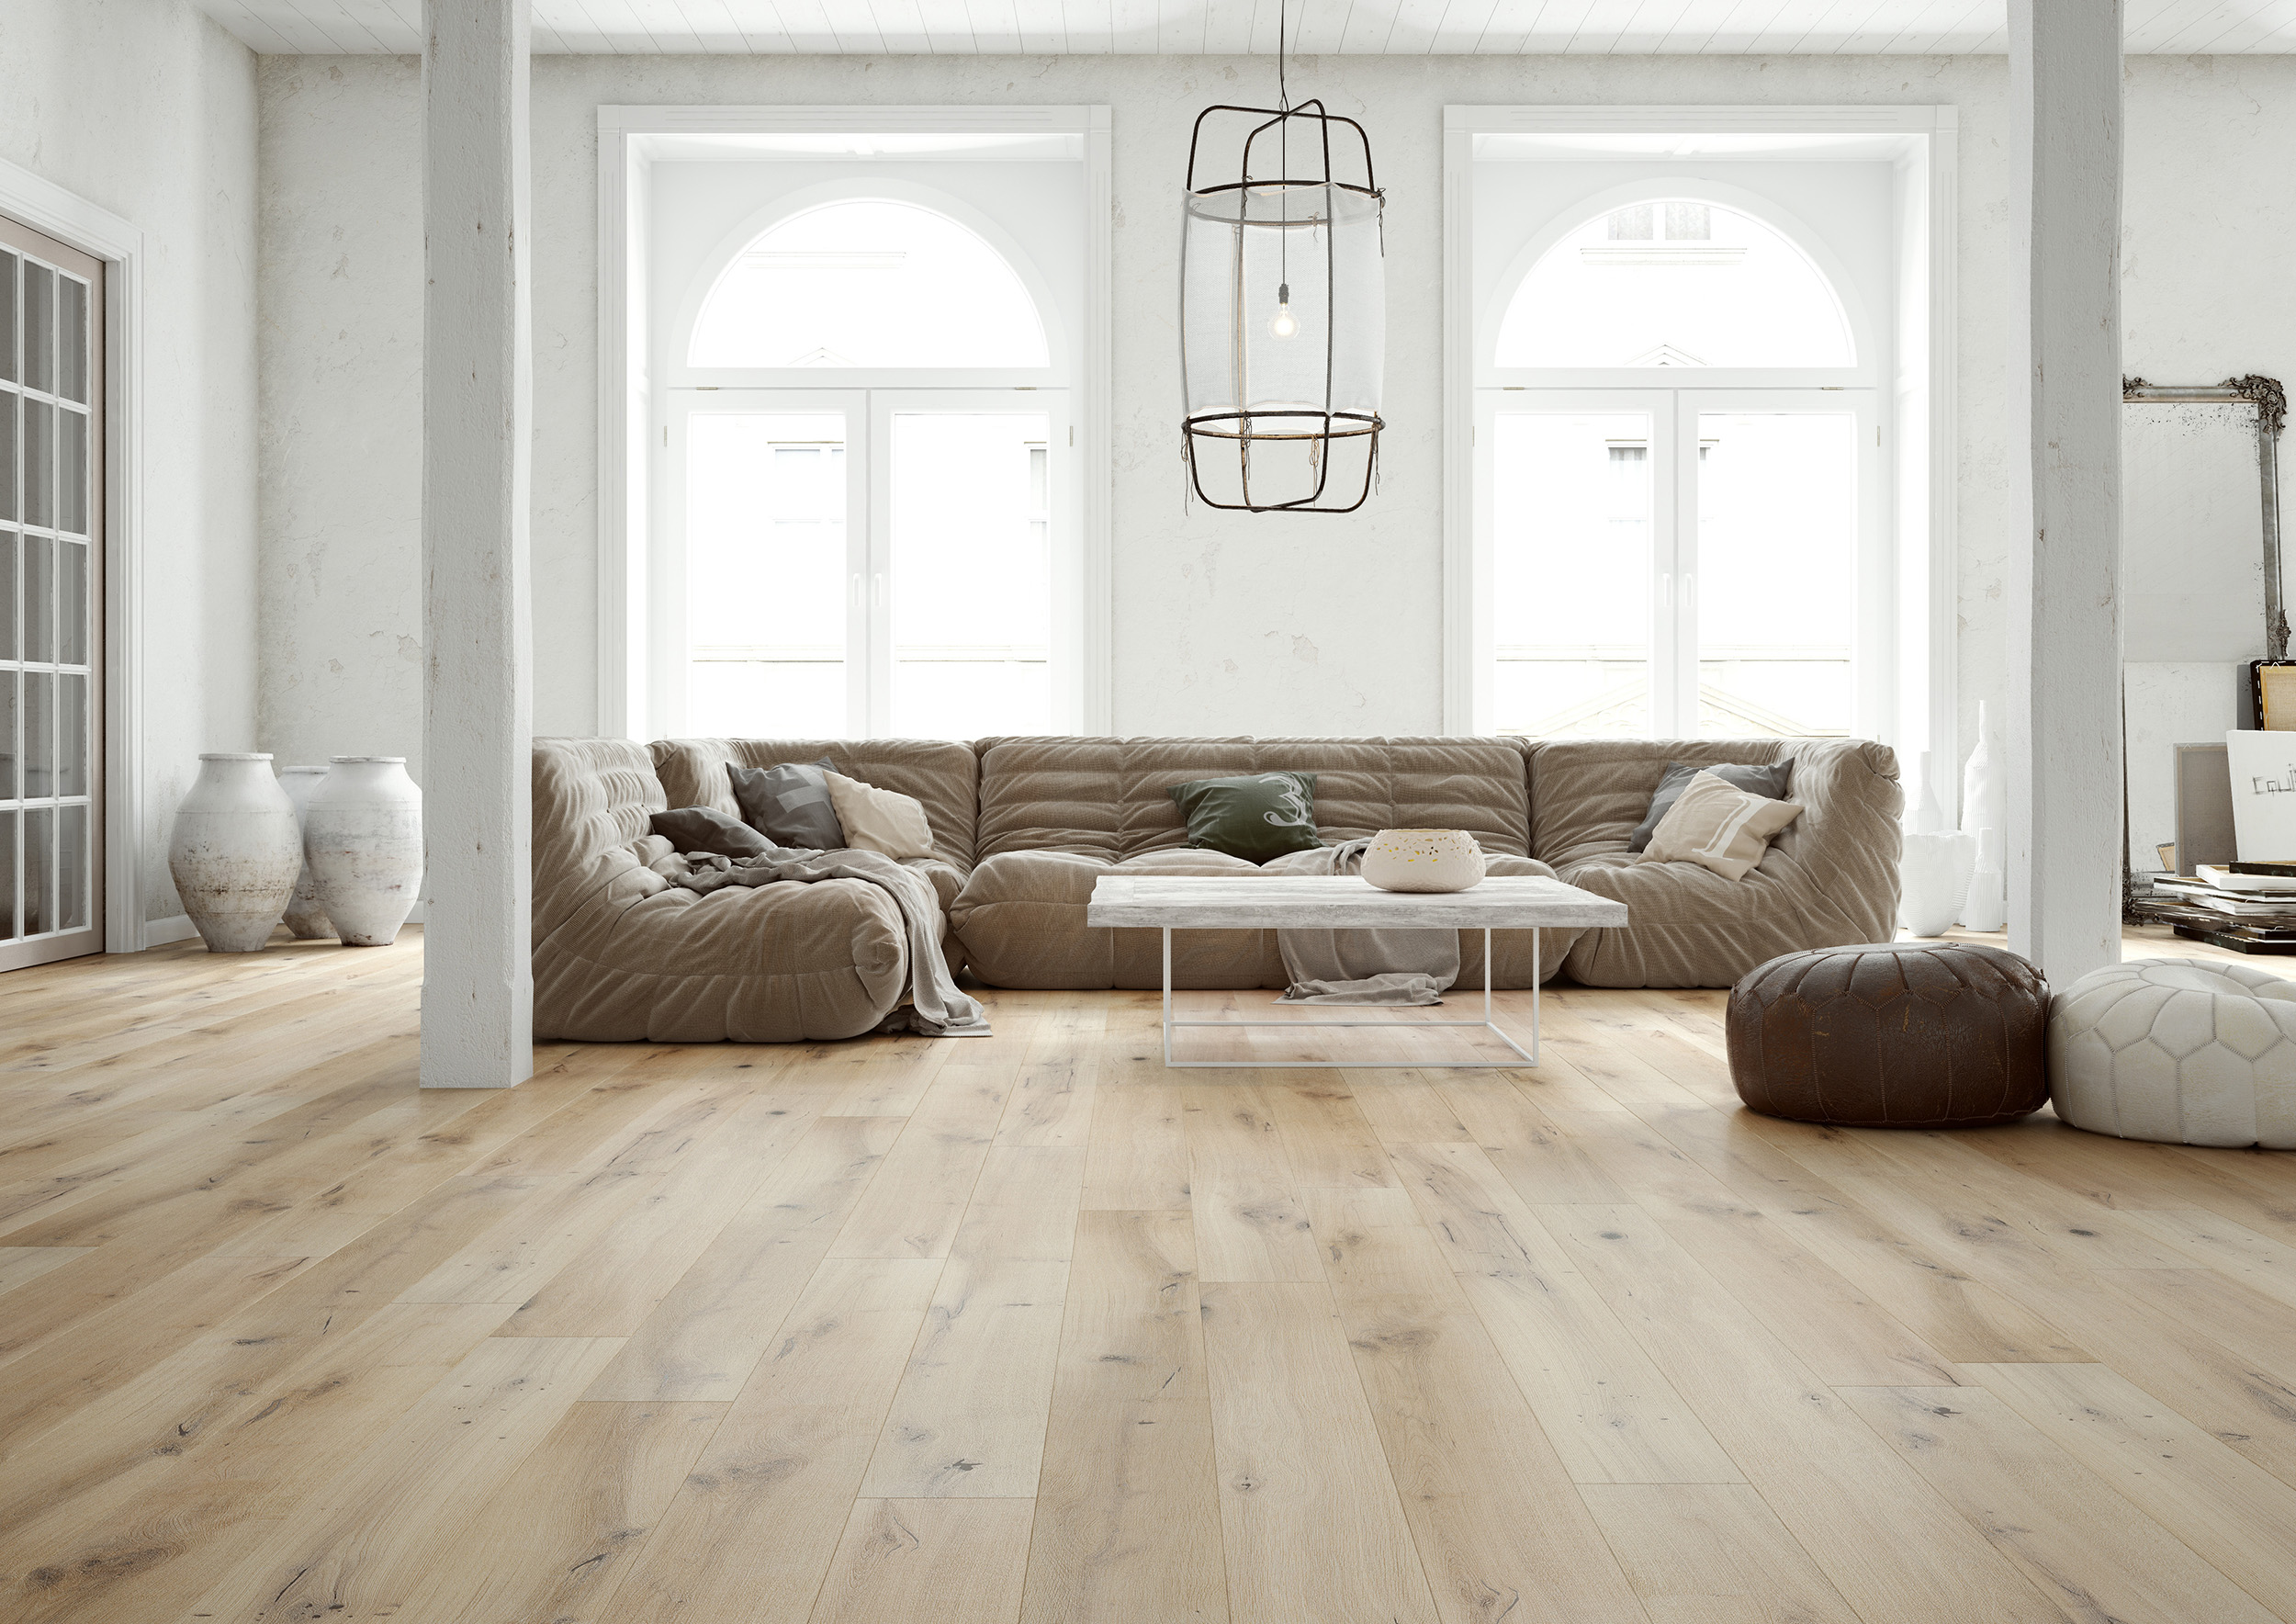 light laminate flooring in living room